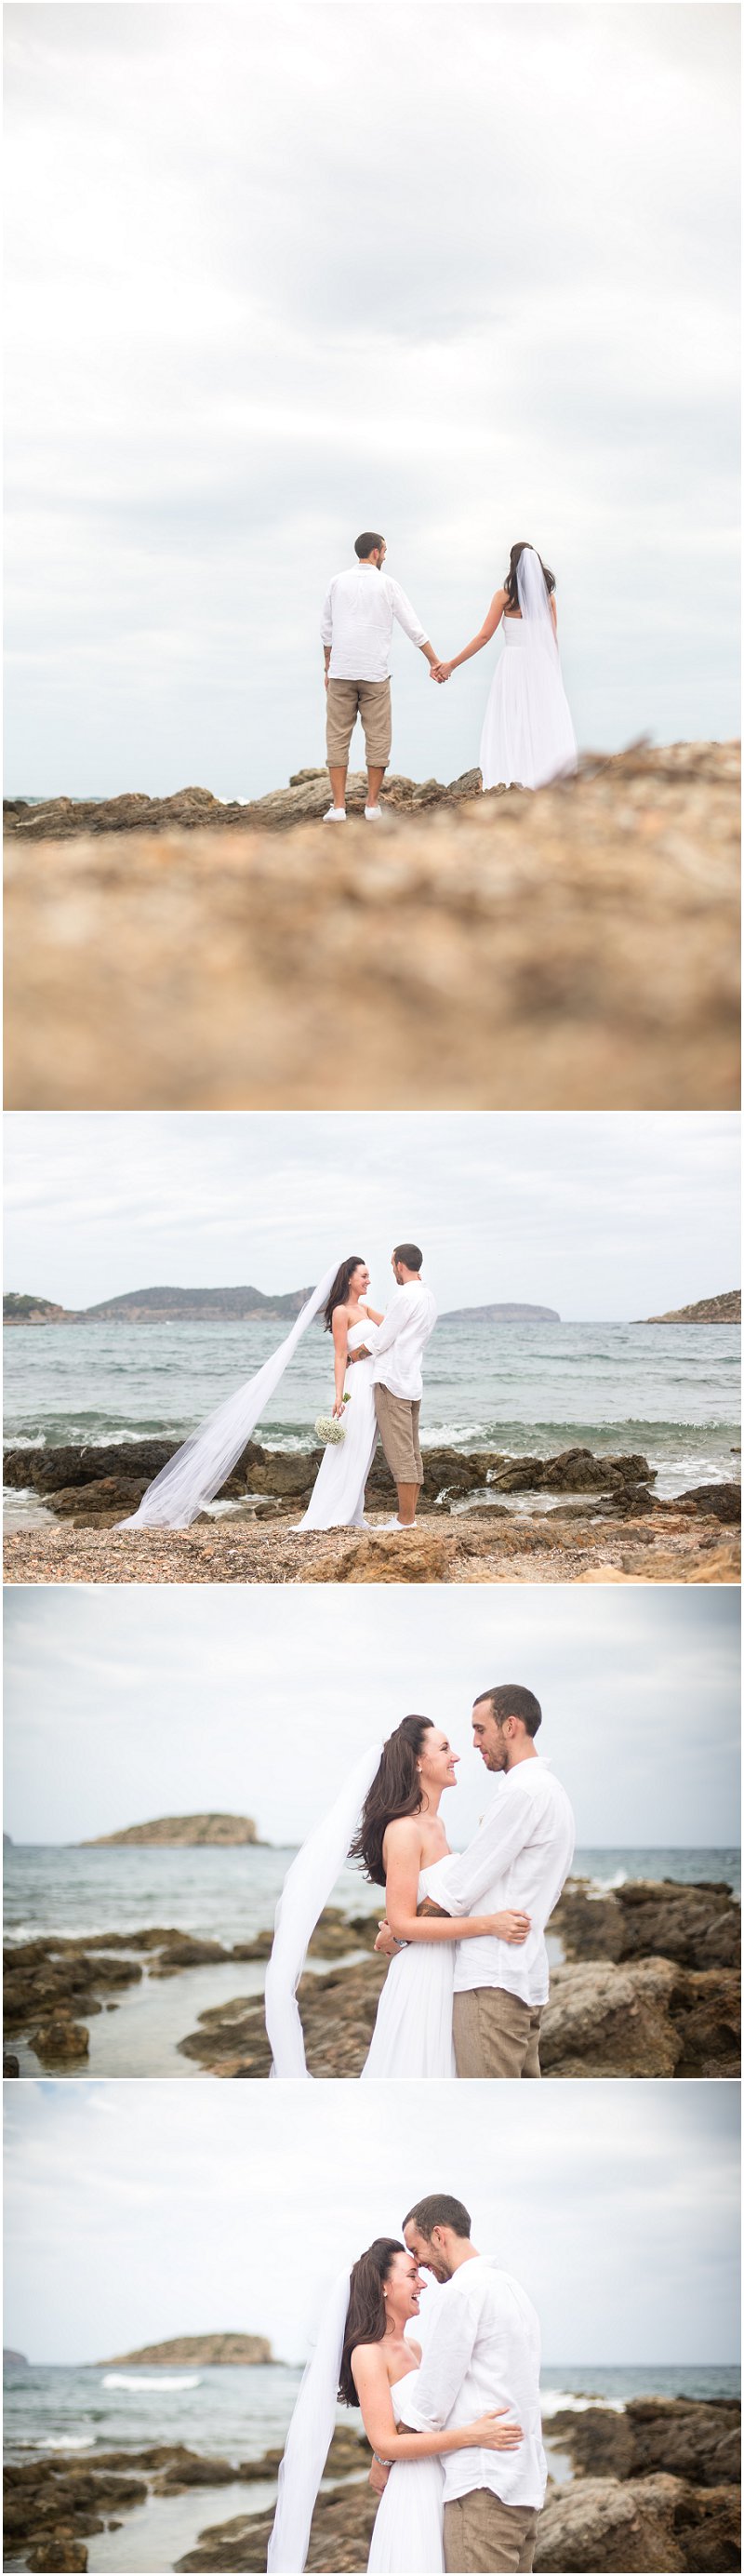 Wedding Photography Bride and Groom on Ibiza Beach, Jacaranda